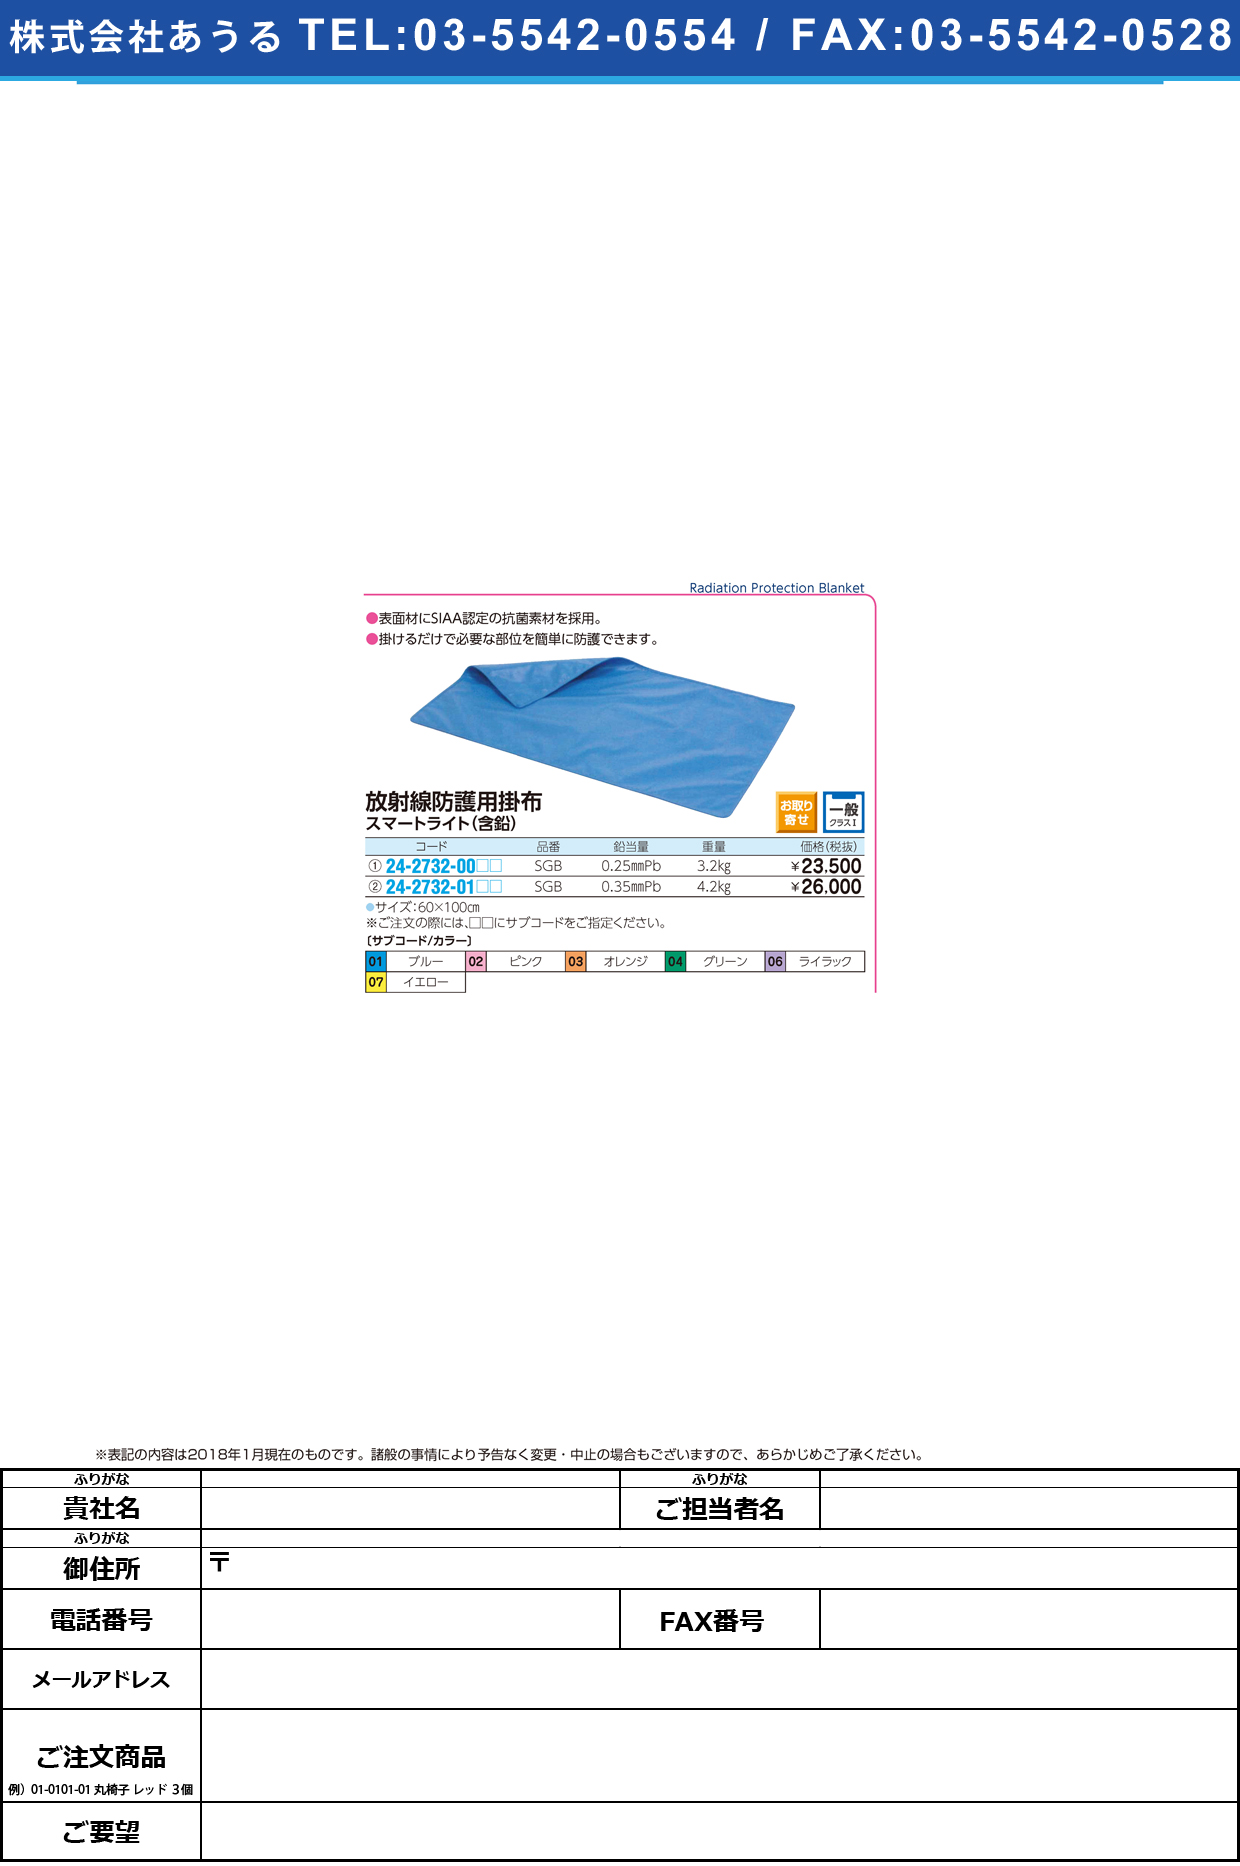 (24-2732-00)放射線防護用掛布（スマートライト） SGB(0.25MMPB) ﾎｳｼｬｾﾝﾎﾞｳｺﾞﾖｳｶｹﾇﾉｽﾏｰ ブルー【1枚単位】【2018年カタログ商品】